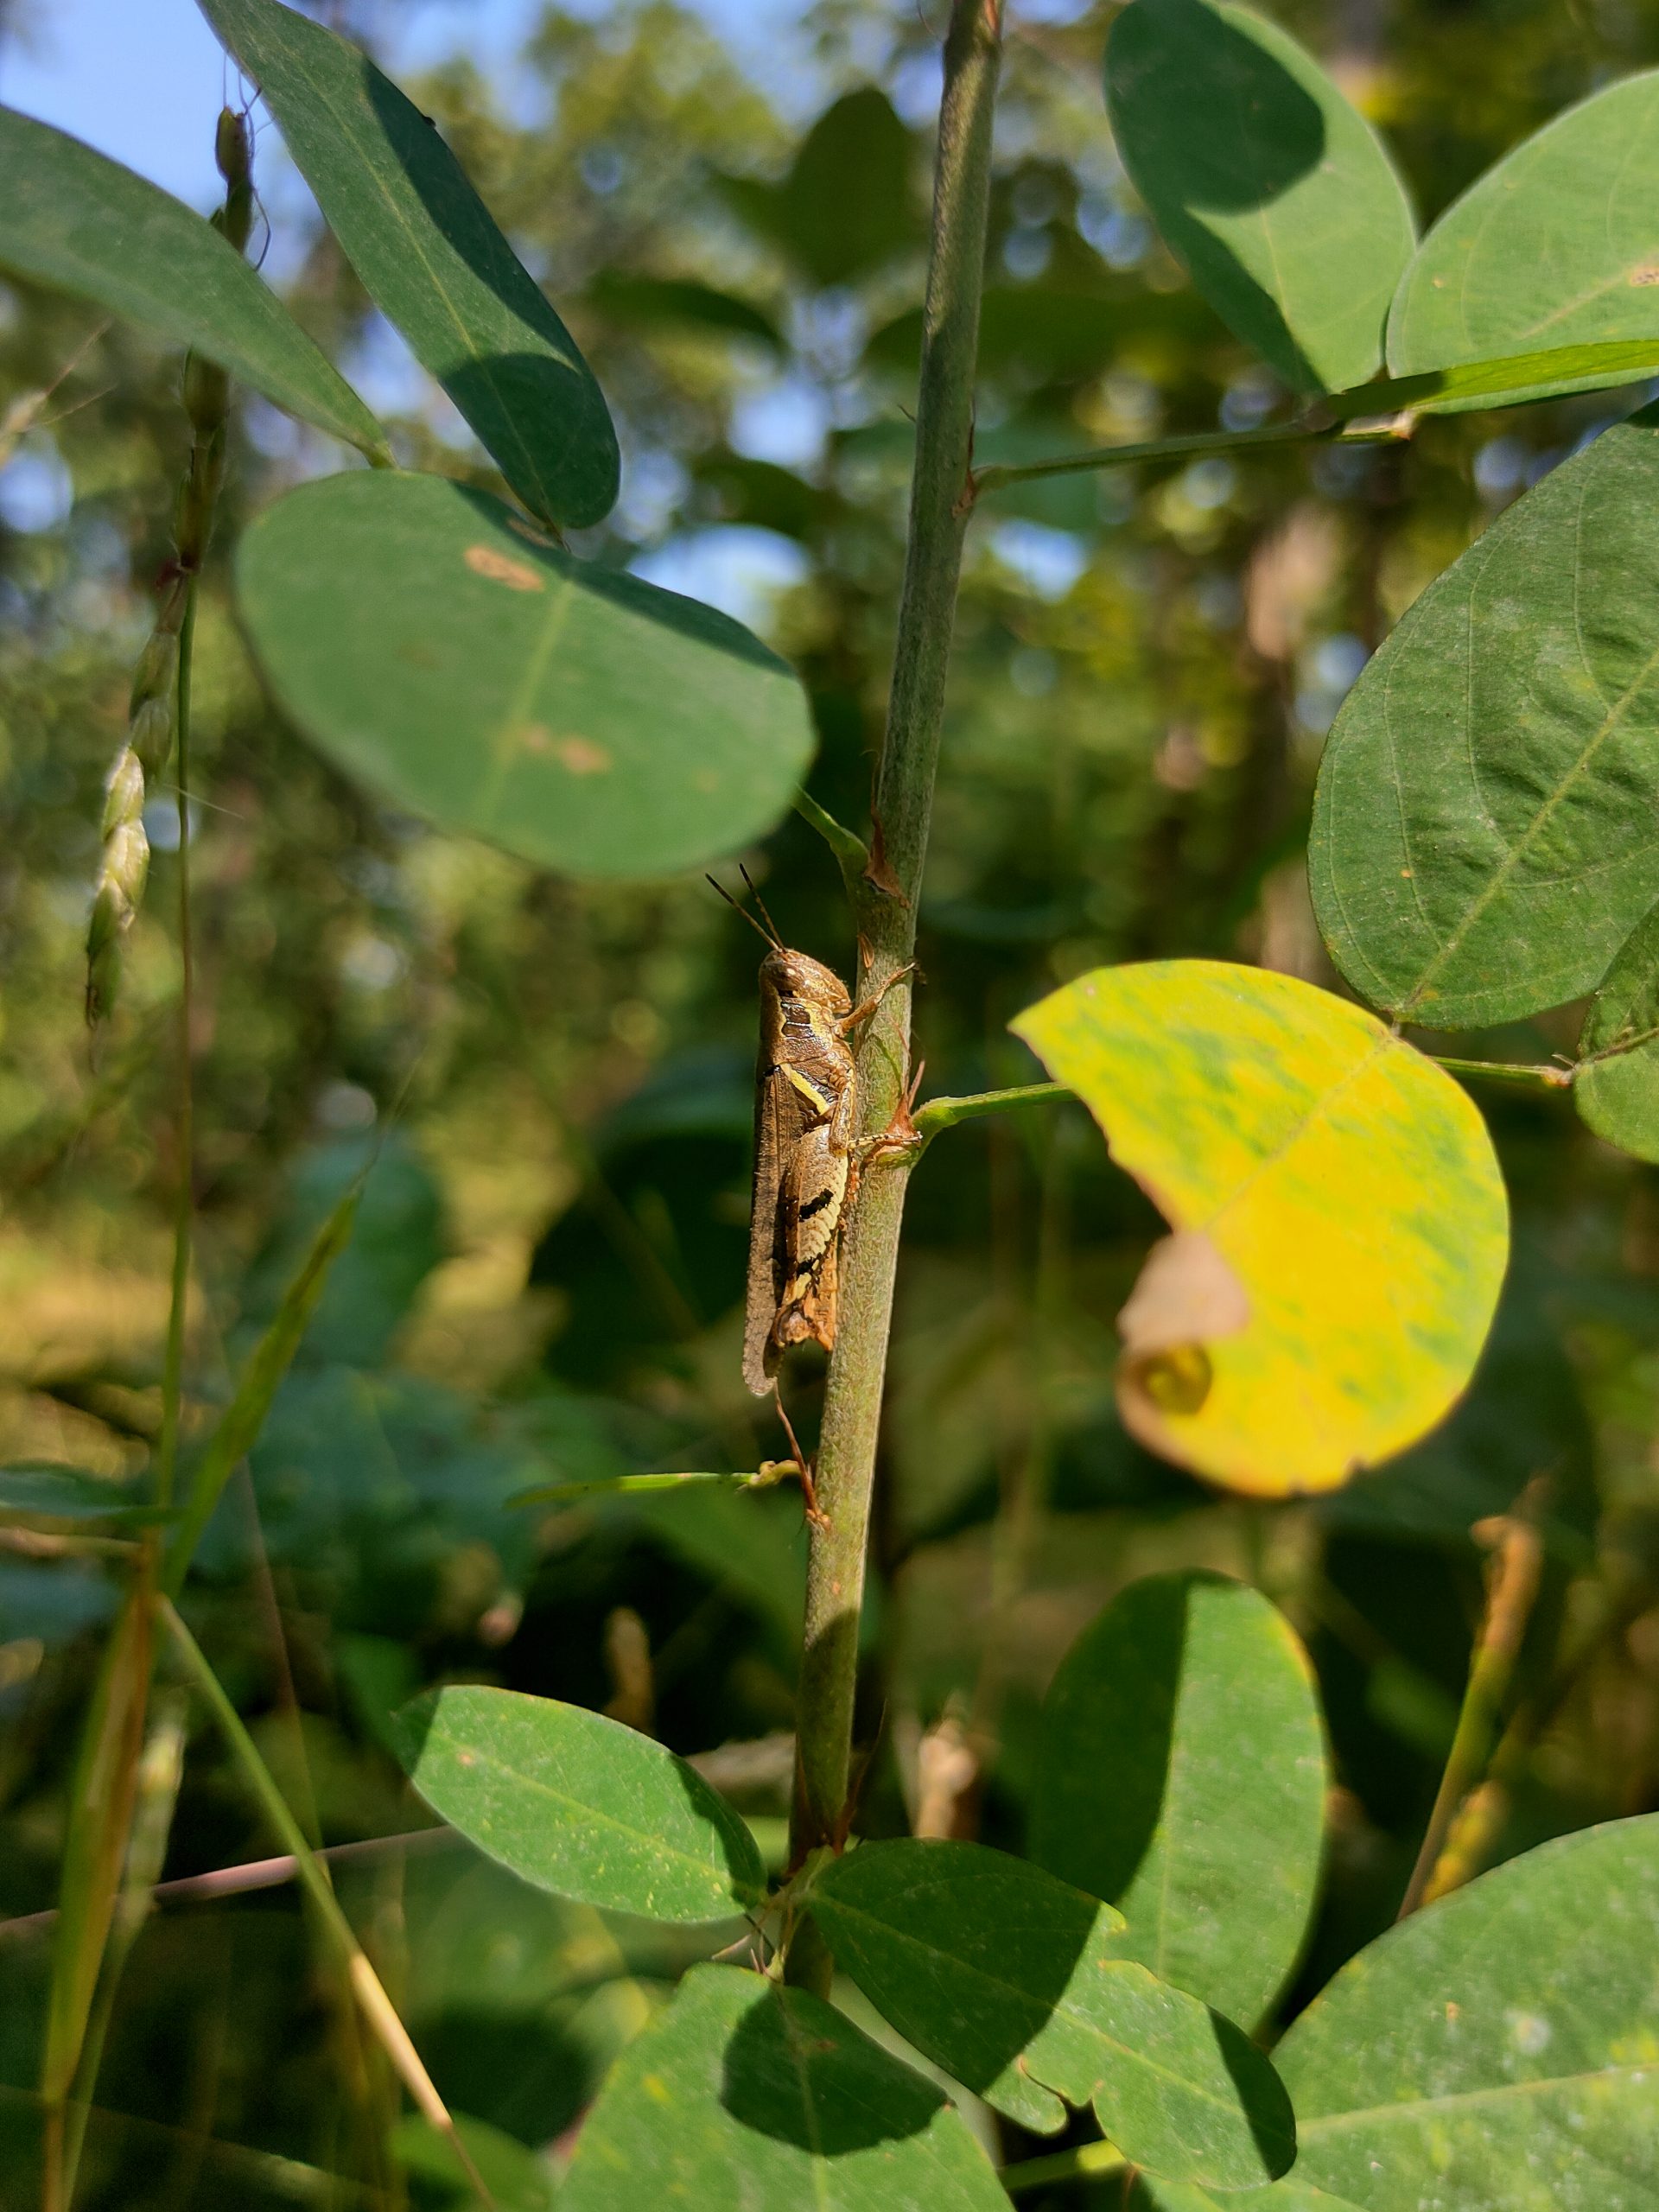 Grasshopper on plant stem